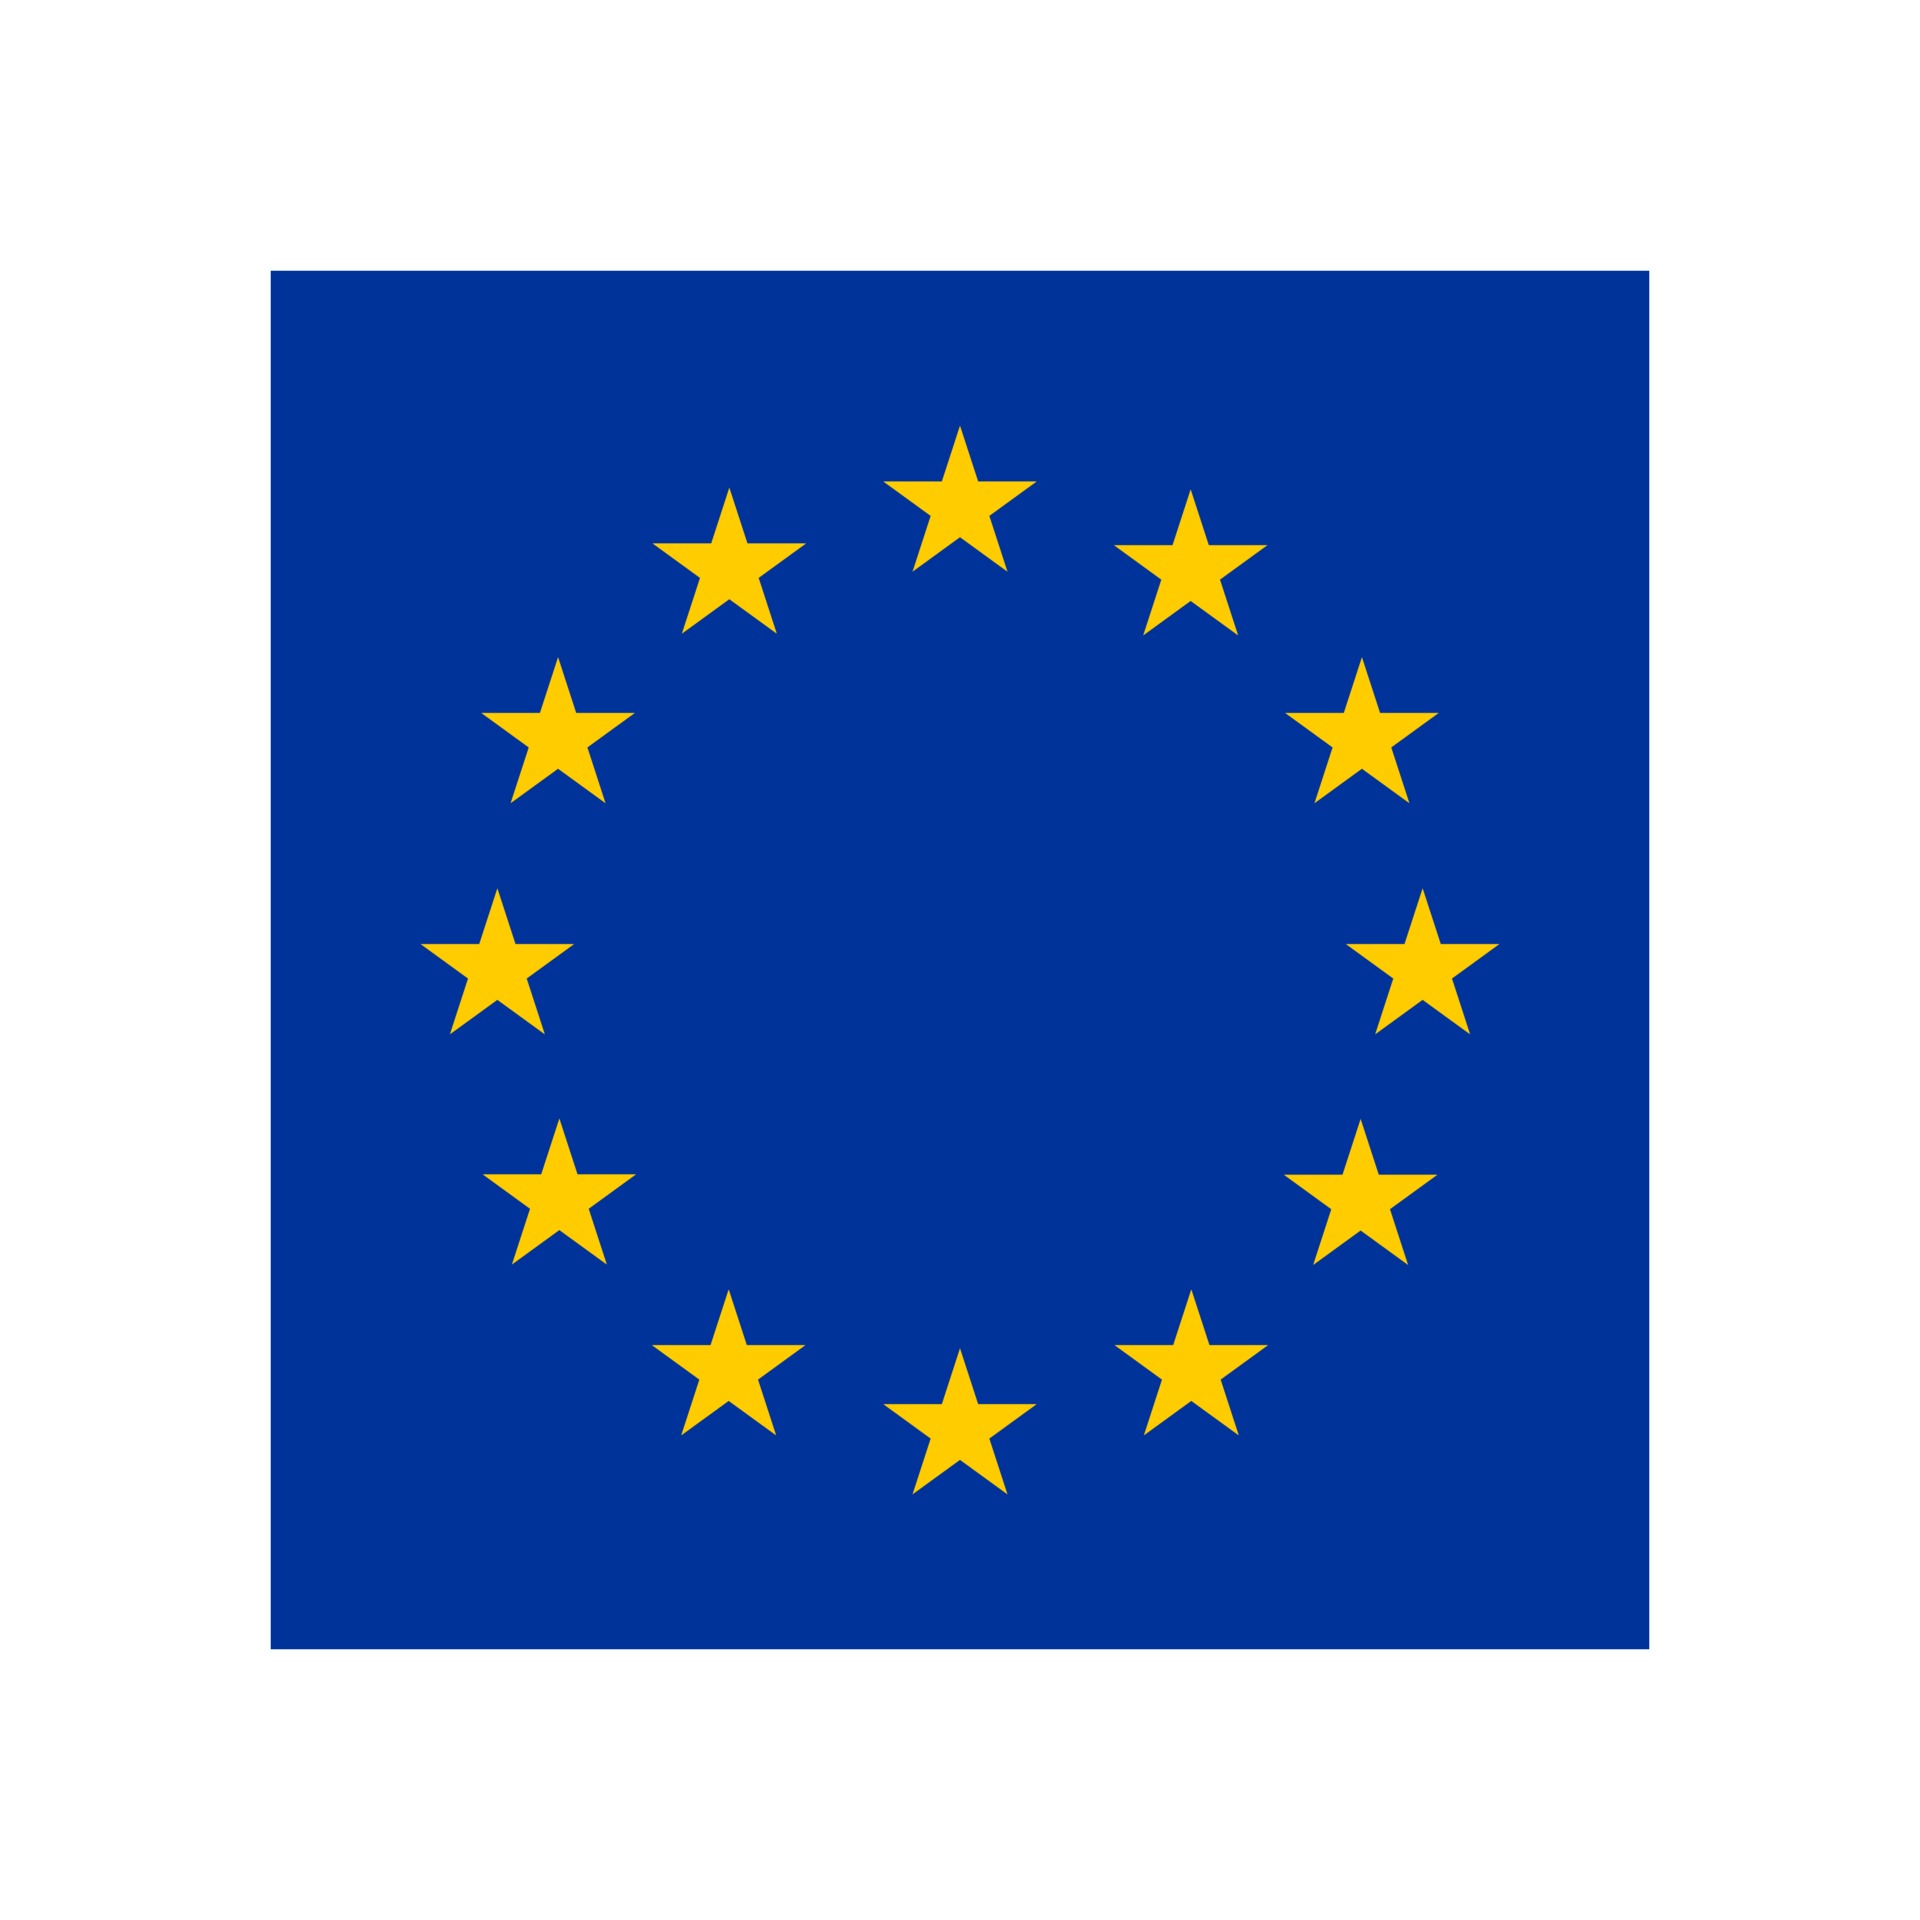 Lấy cảm hứng từ cờ Bỉ, cờ Liên minh châu Âu cũng mang trong mình sự độc đáo và nhận được sự quan tâm và yêu thích từ nhiều người. Màu xanh biển tươi mát kết hợp với các ngôi sao vàng tạo nên một tác phẩm nghệ thuật đầy sức sống. Nhấn play để thưởng thức tác phẩm huyền thoại này!